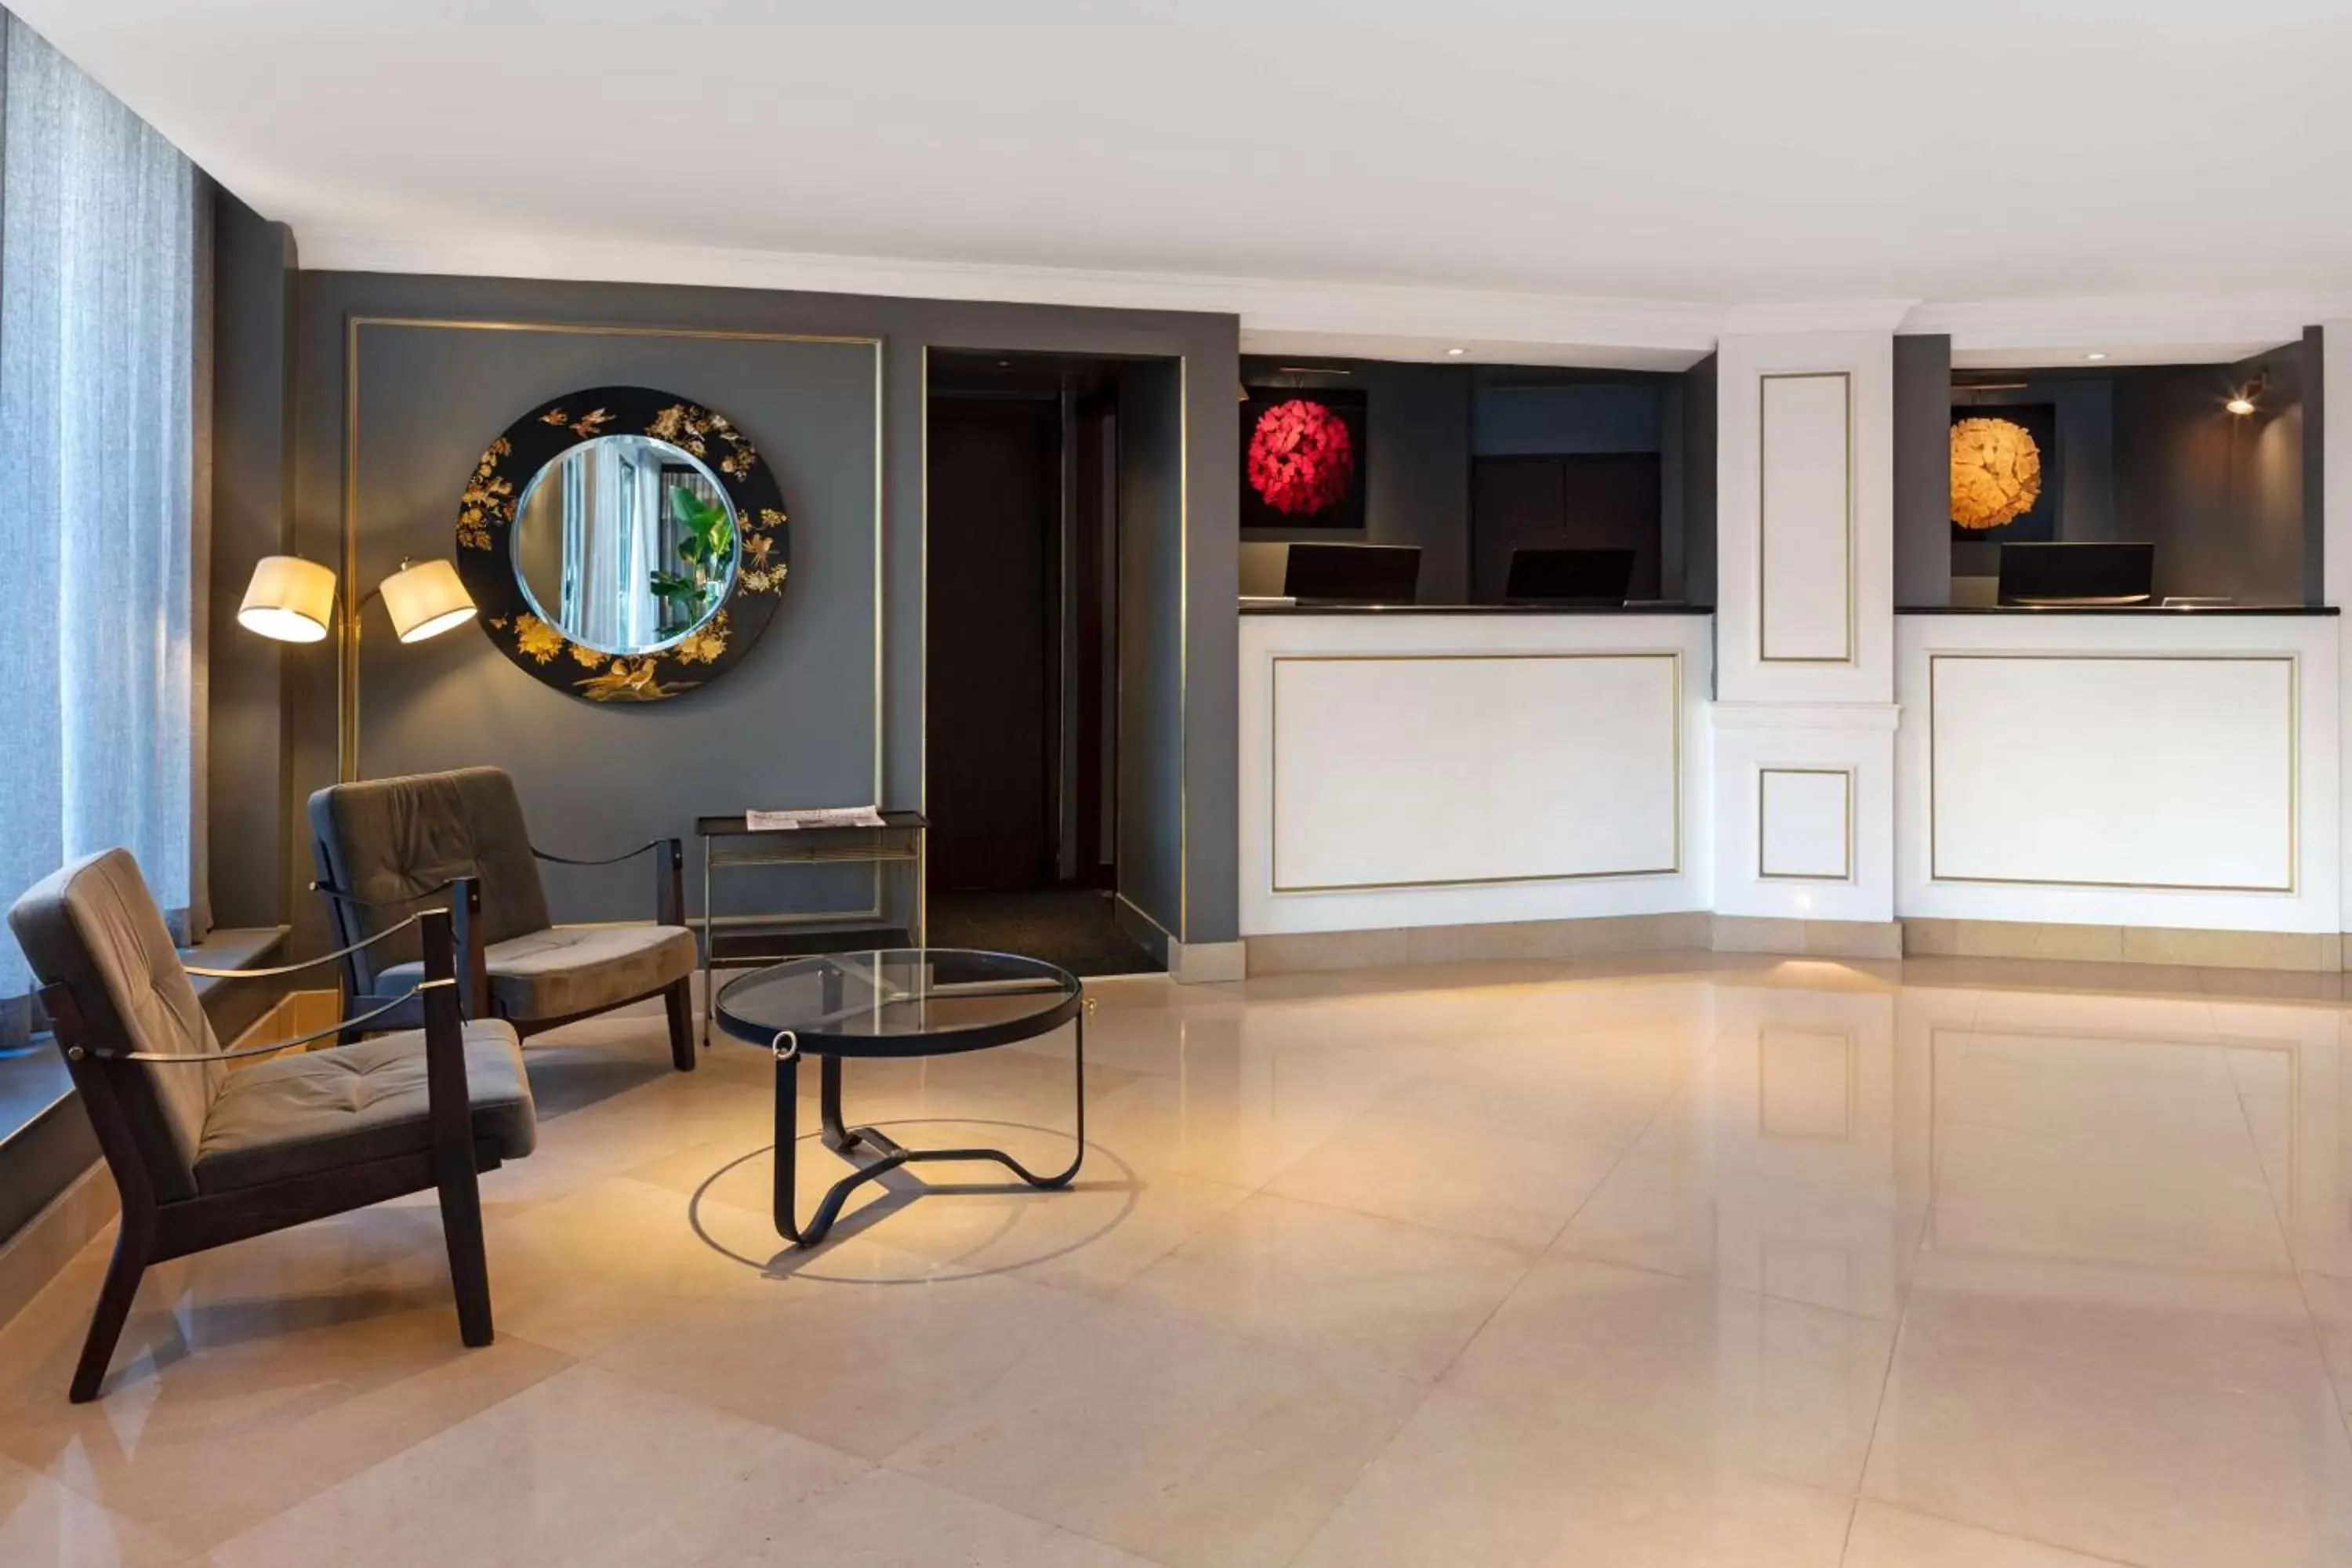 Lobby or reception, Lobby/Reception in Radisson Blu Edwardian Bond Street Hotel, London